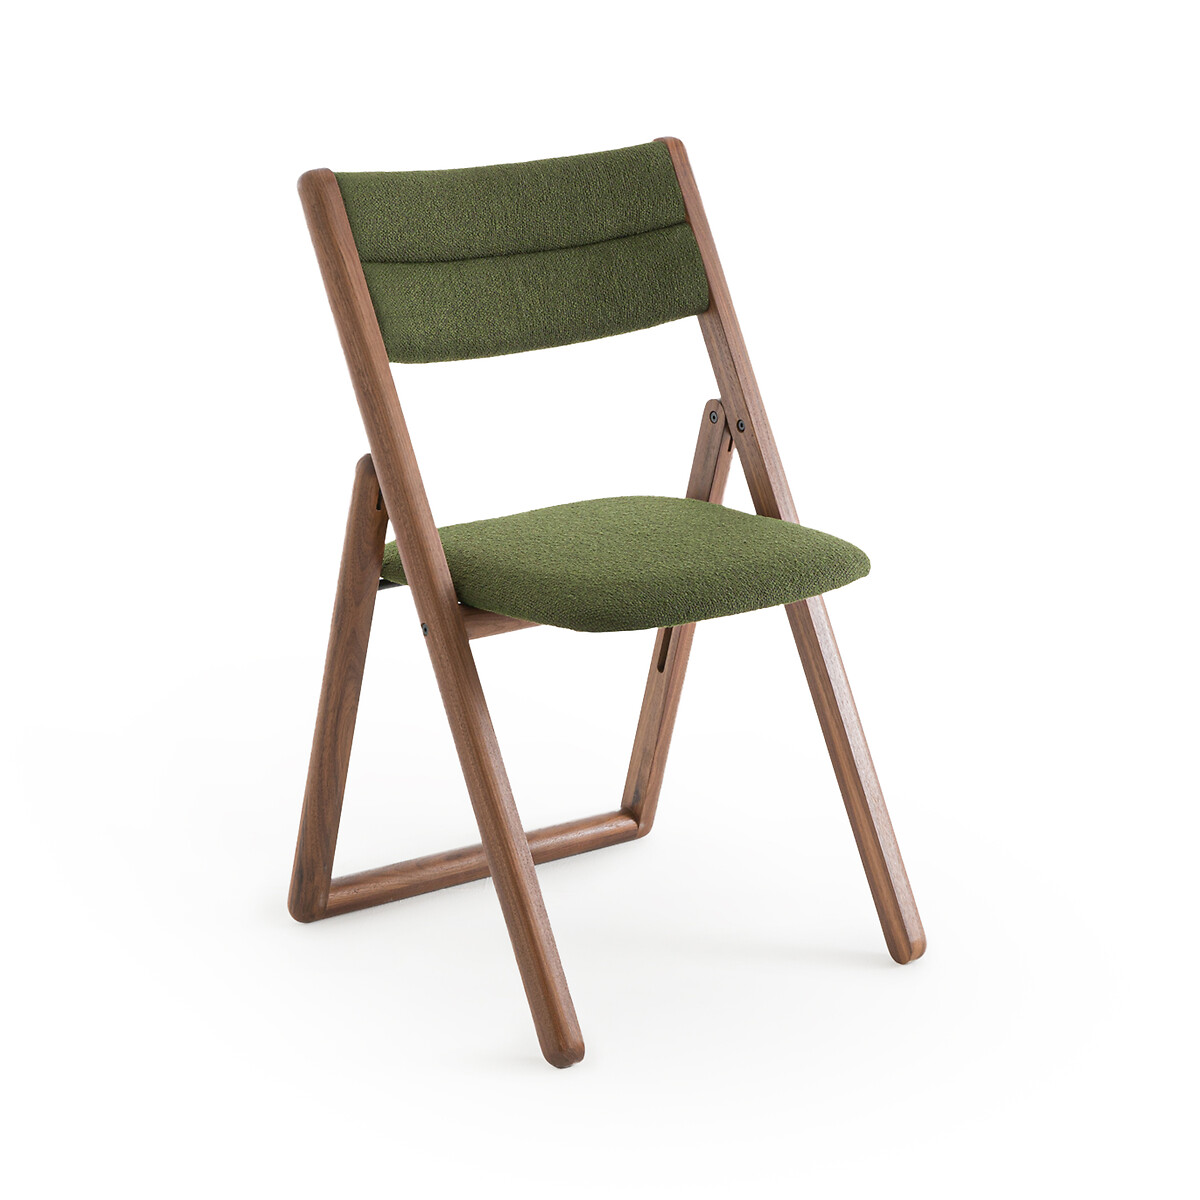 Стул складной из орехового дерева Camminata дизайн Э Галлина единый размер зеленый стул marais дизайн э галлина единый размер каштановый